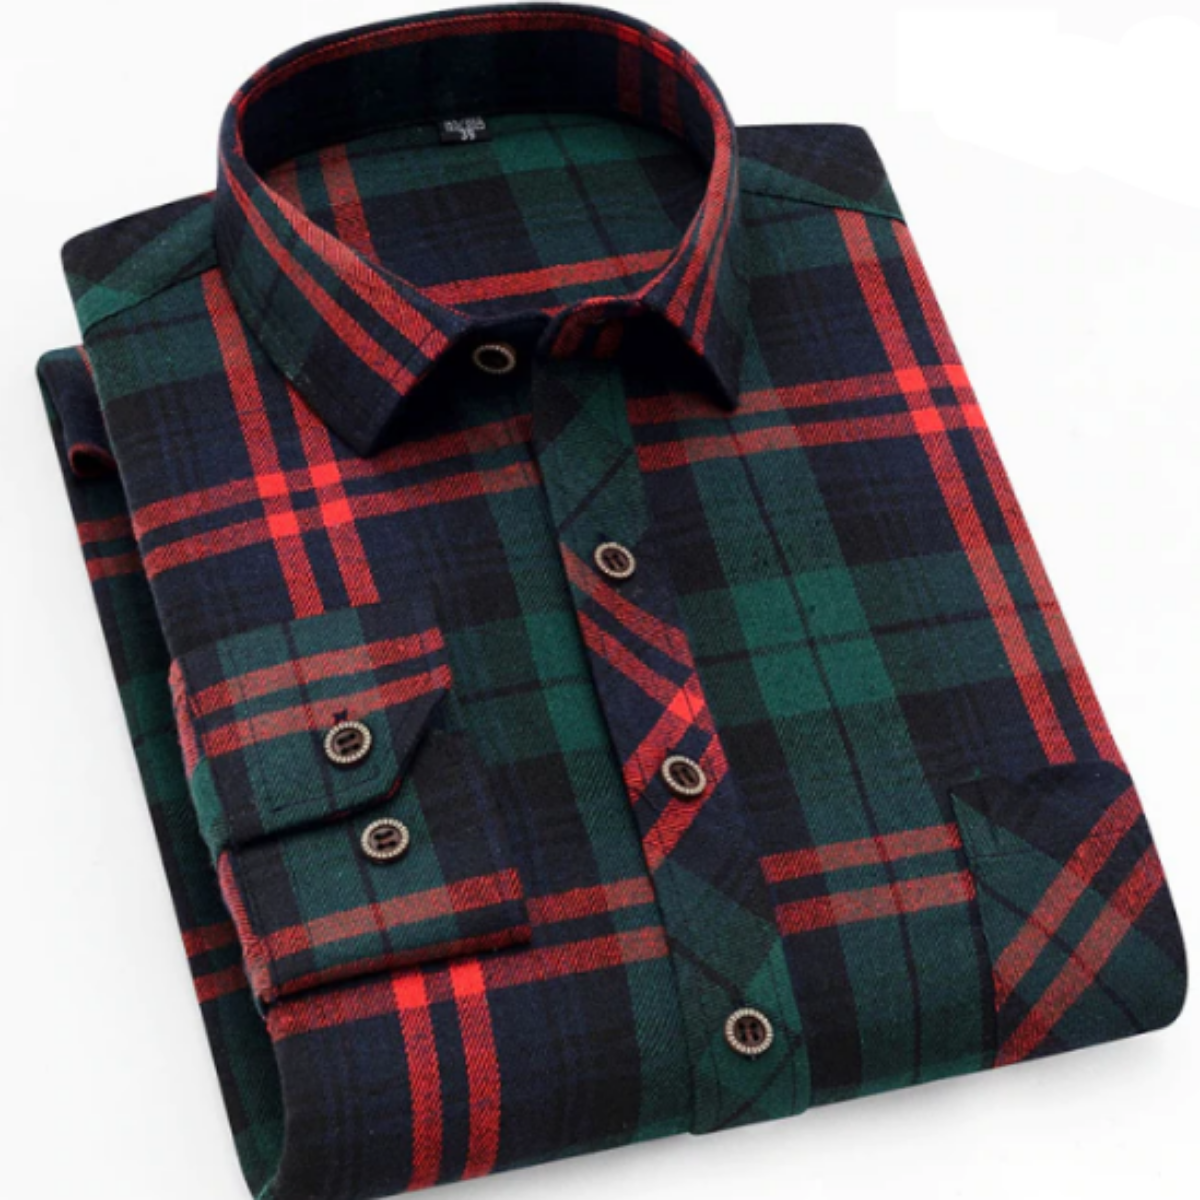 Description: A Men's Plaid Button Down Flannel Shirt, Red/Green.